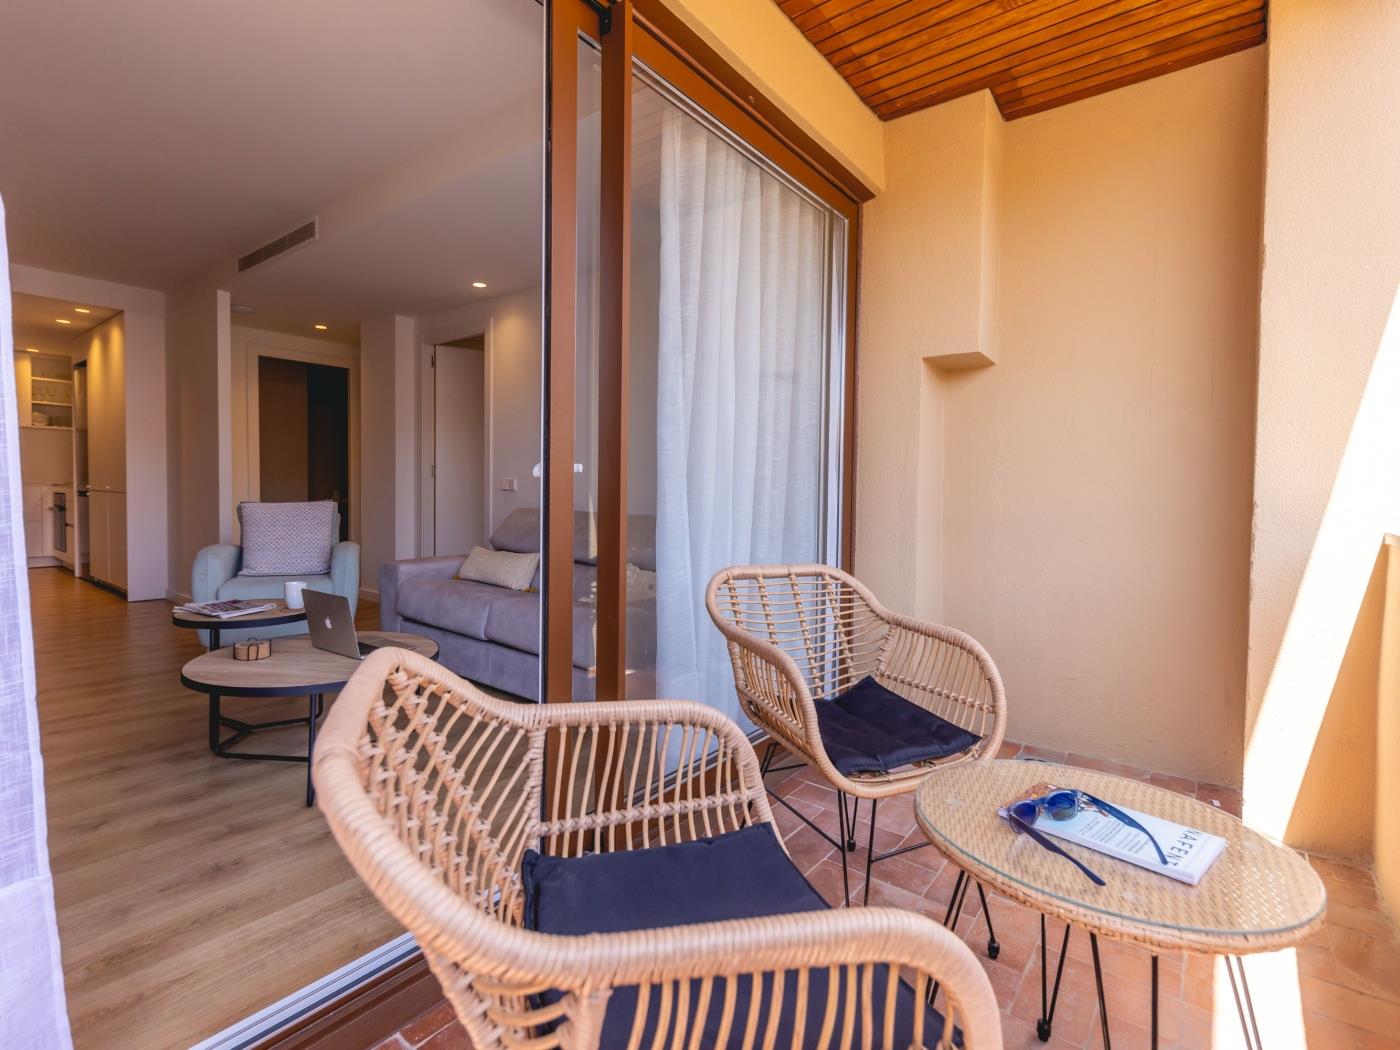 Bravissimo Domènica, 2 bedrooms and balcony in Girona